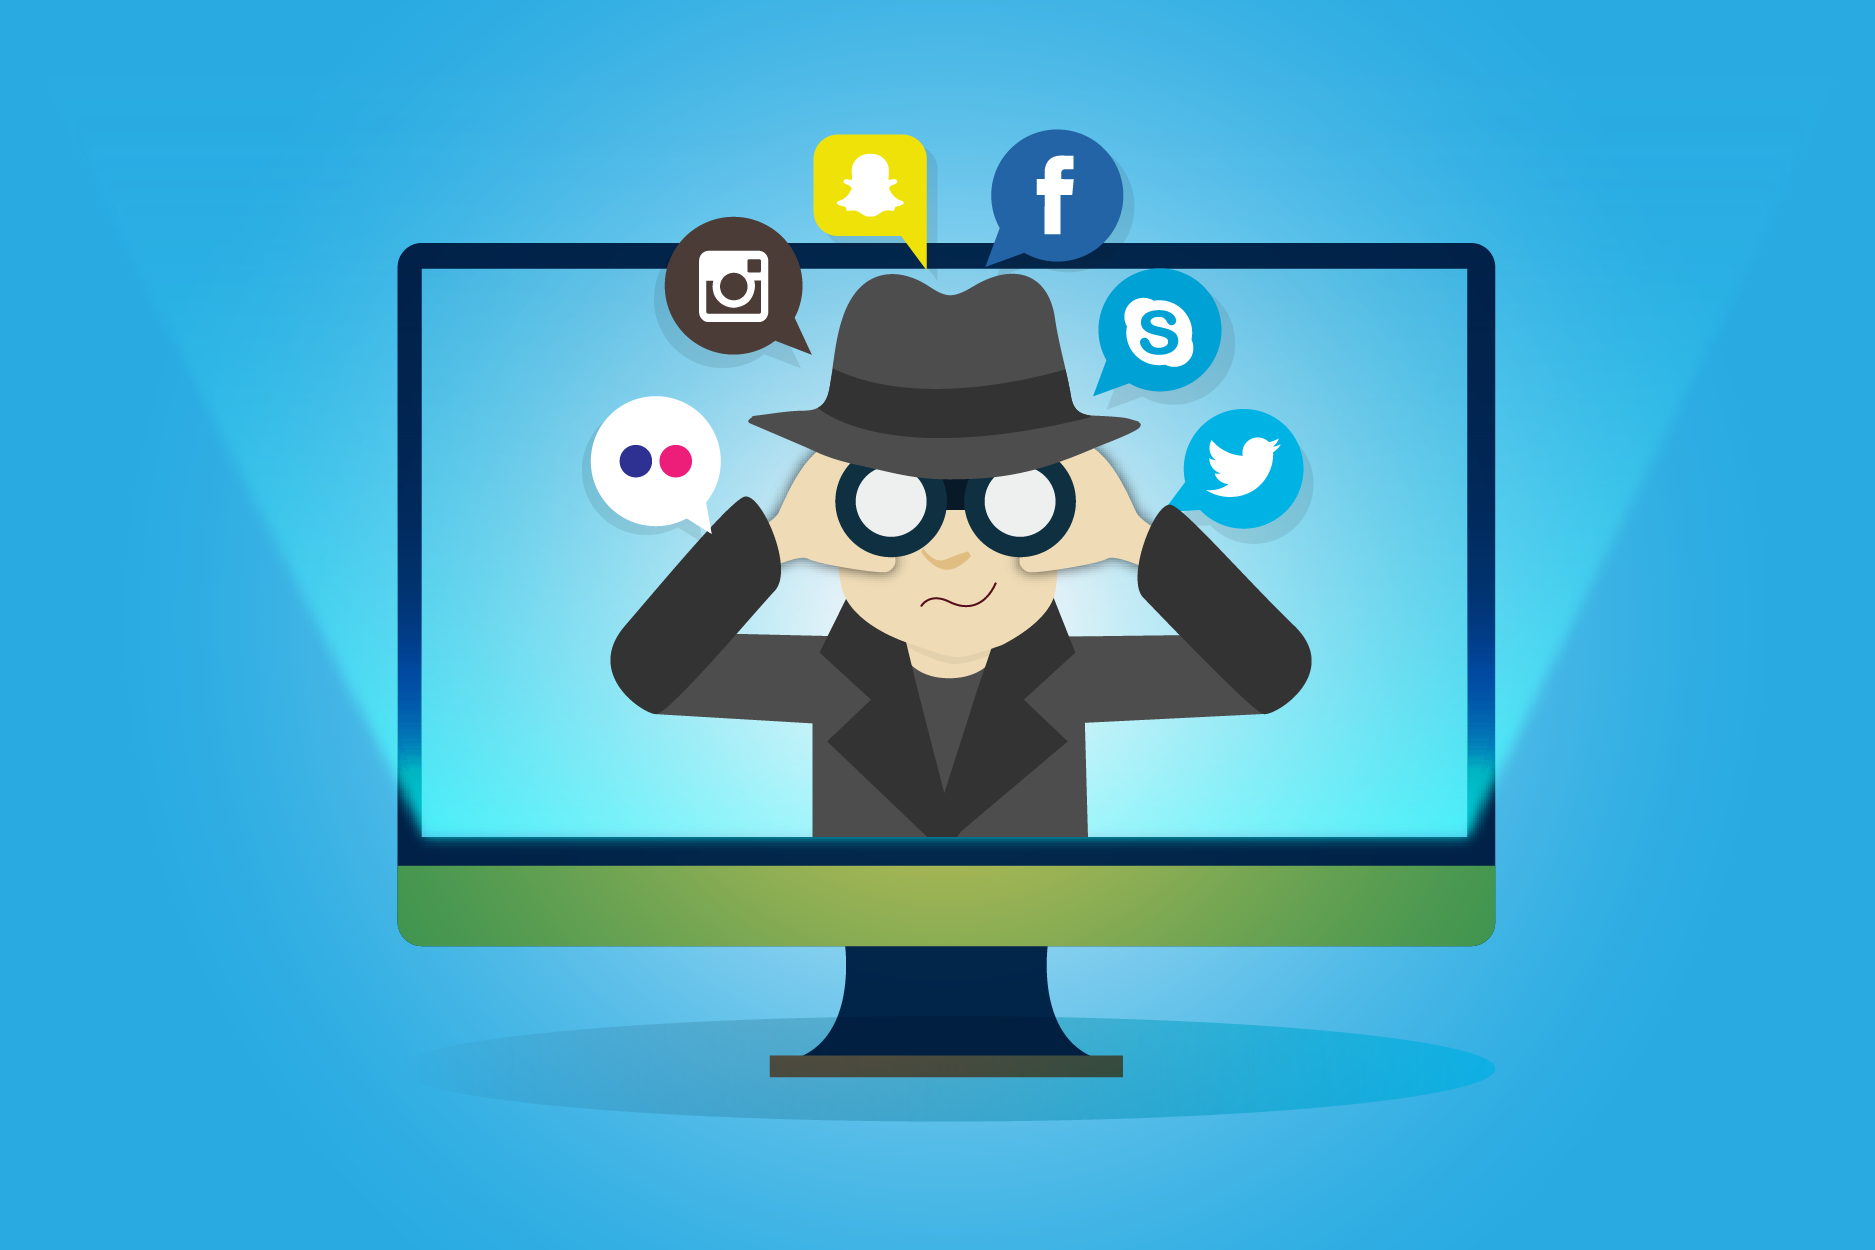 O cyberstalking acontece em redes sociais como Facebook, Instagram o Twitter.